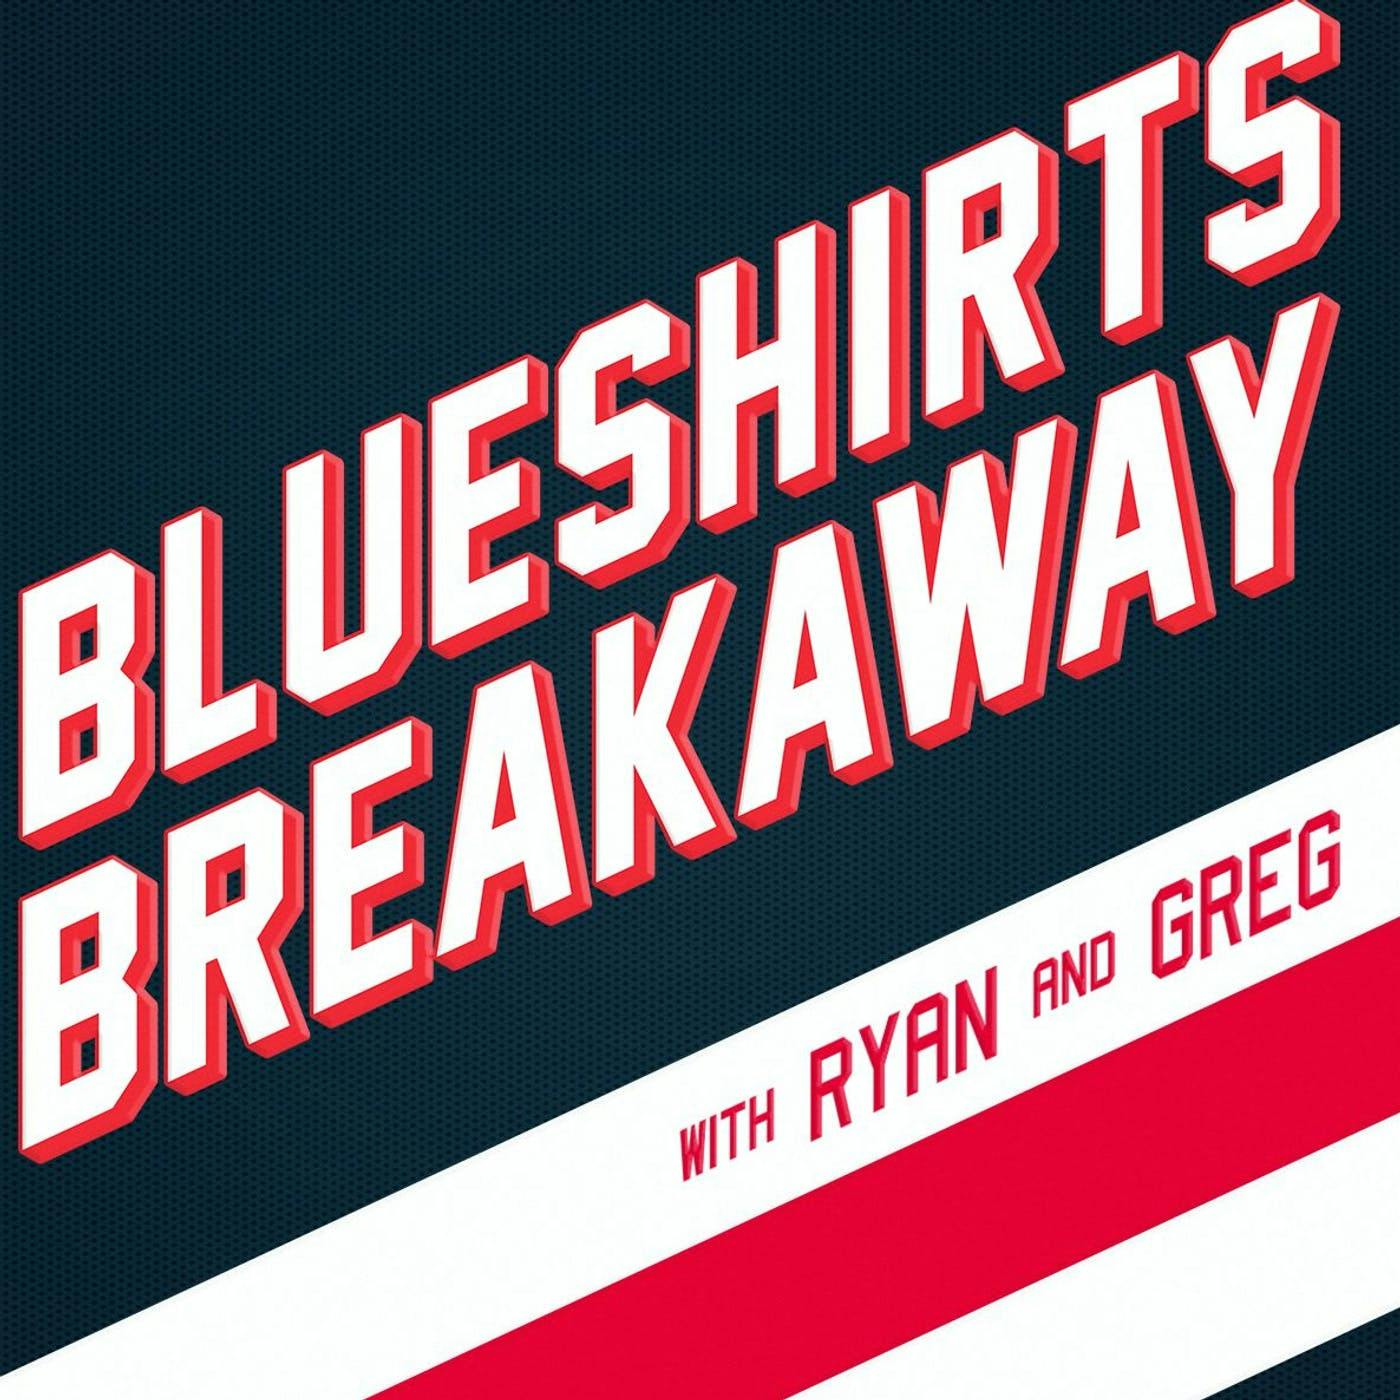 Blueshirts Breakaway EP 90 - Hockey Analytics with Drew Way